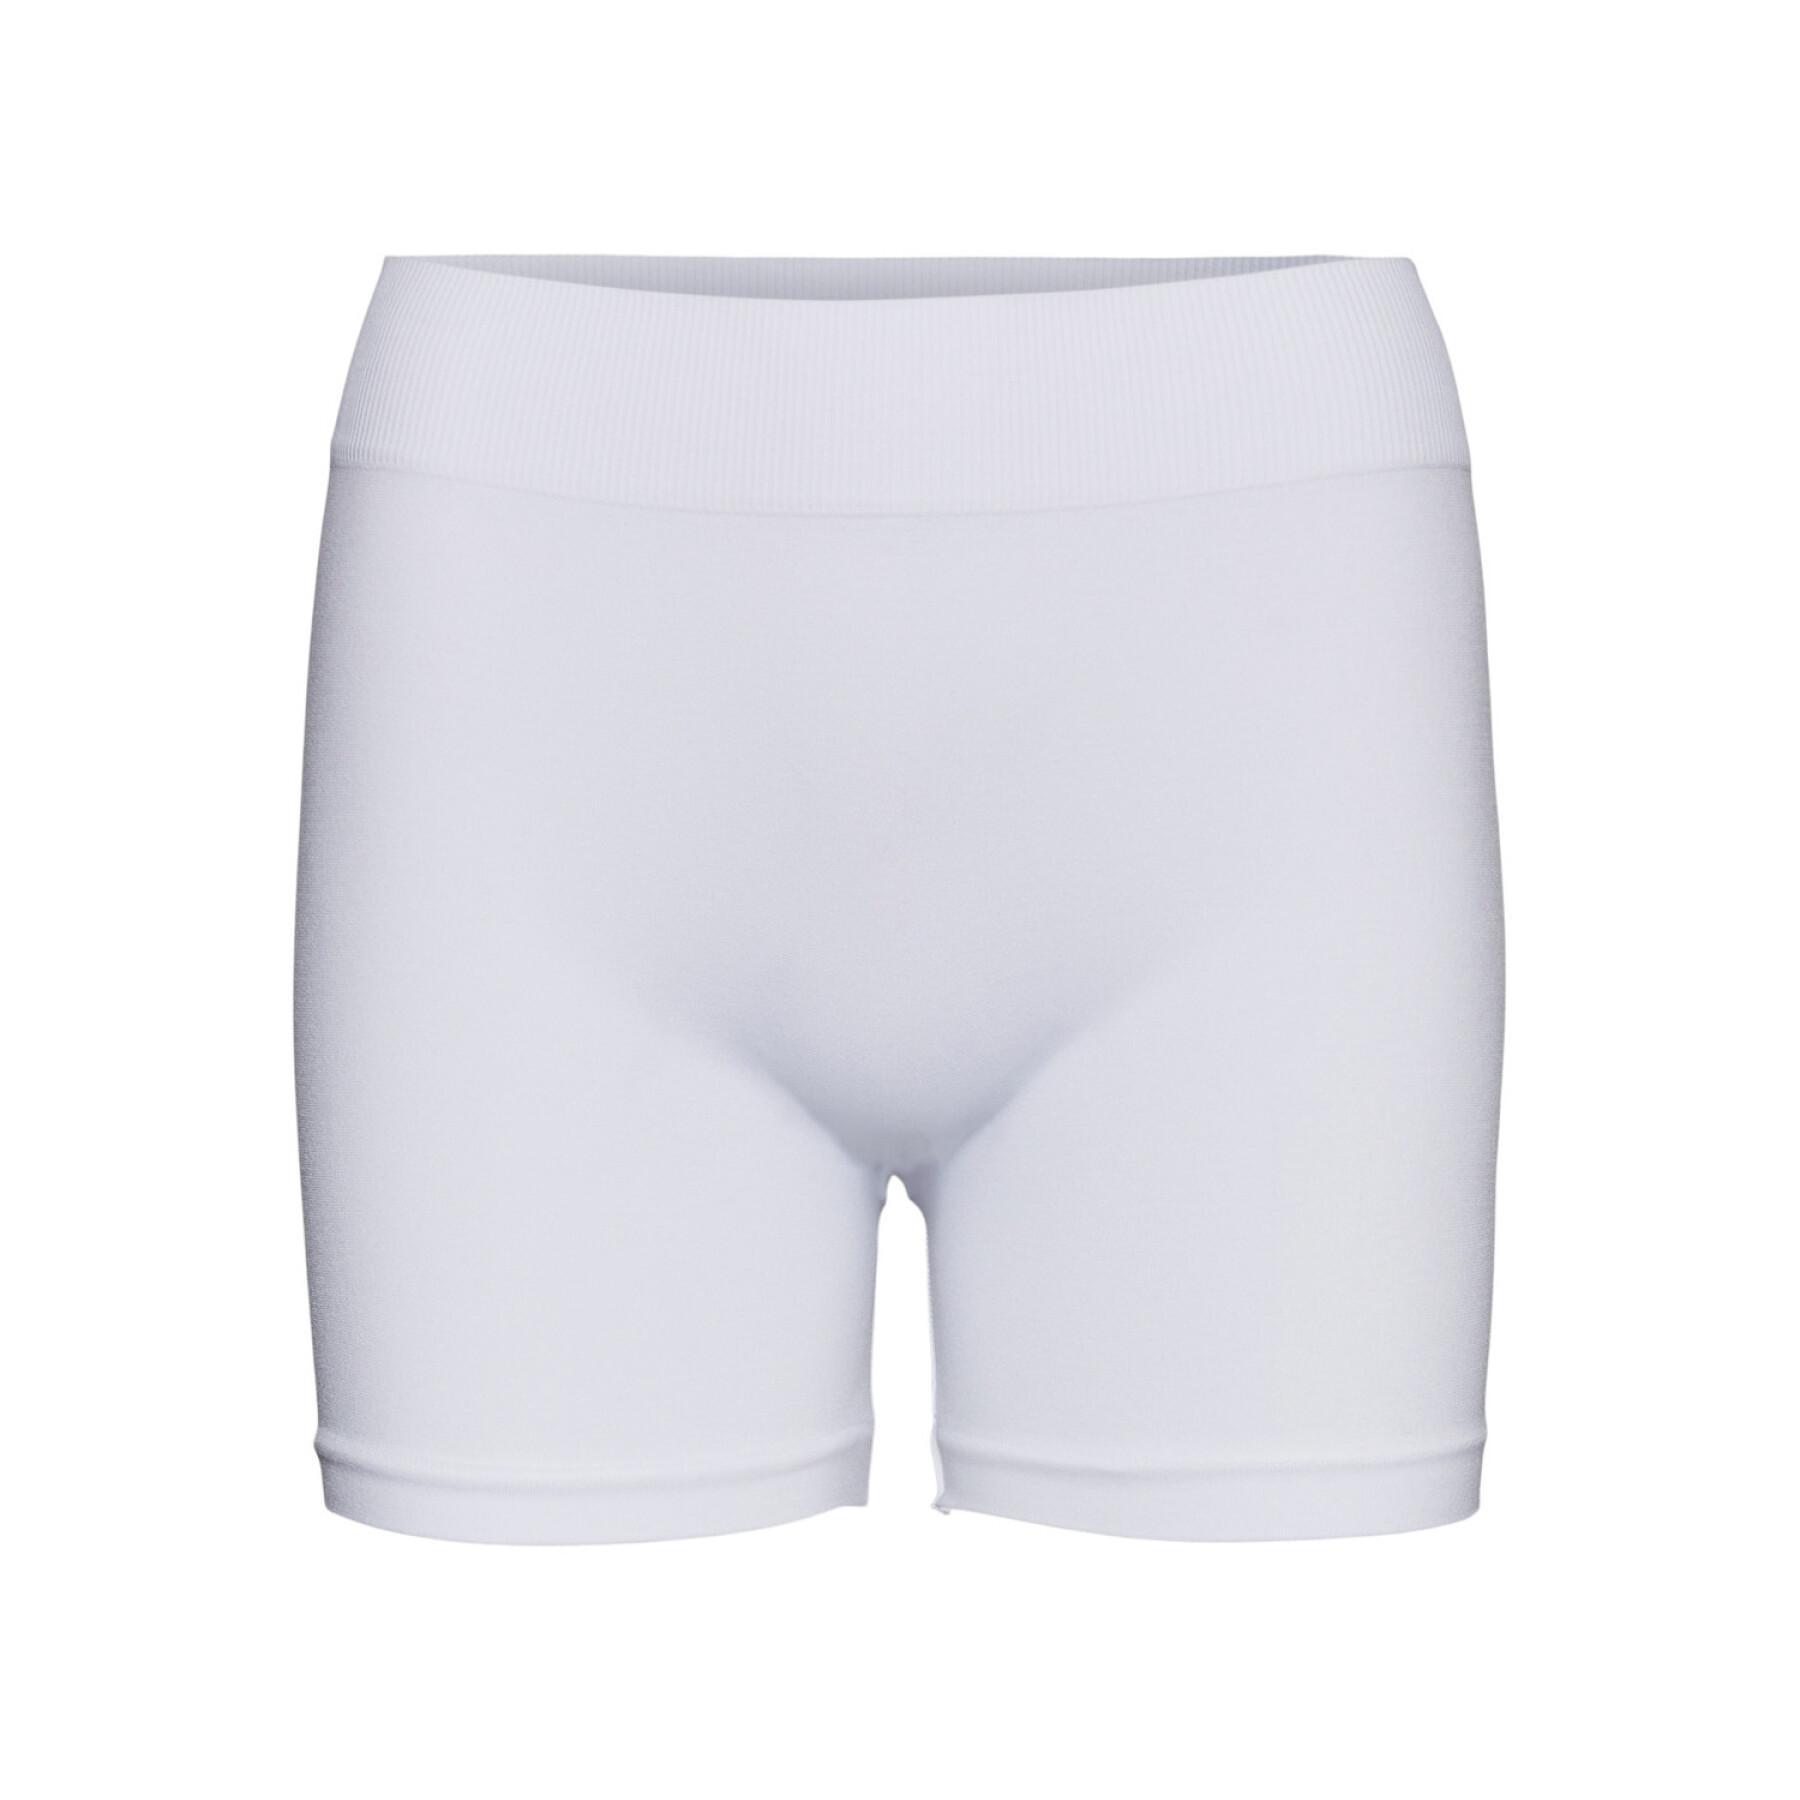 Naadloze mini shorts voor Dames Vero Moda Jackie